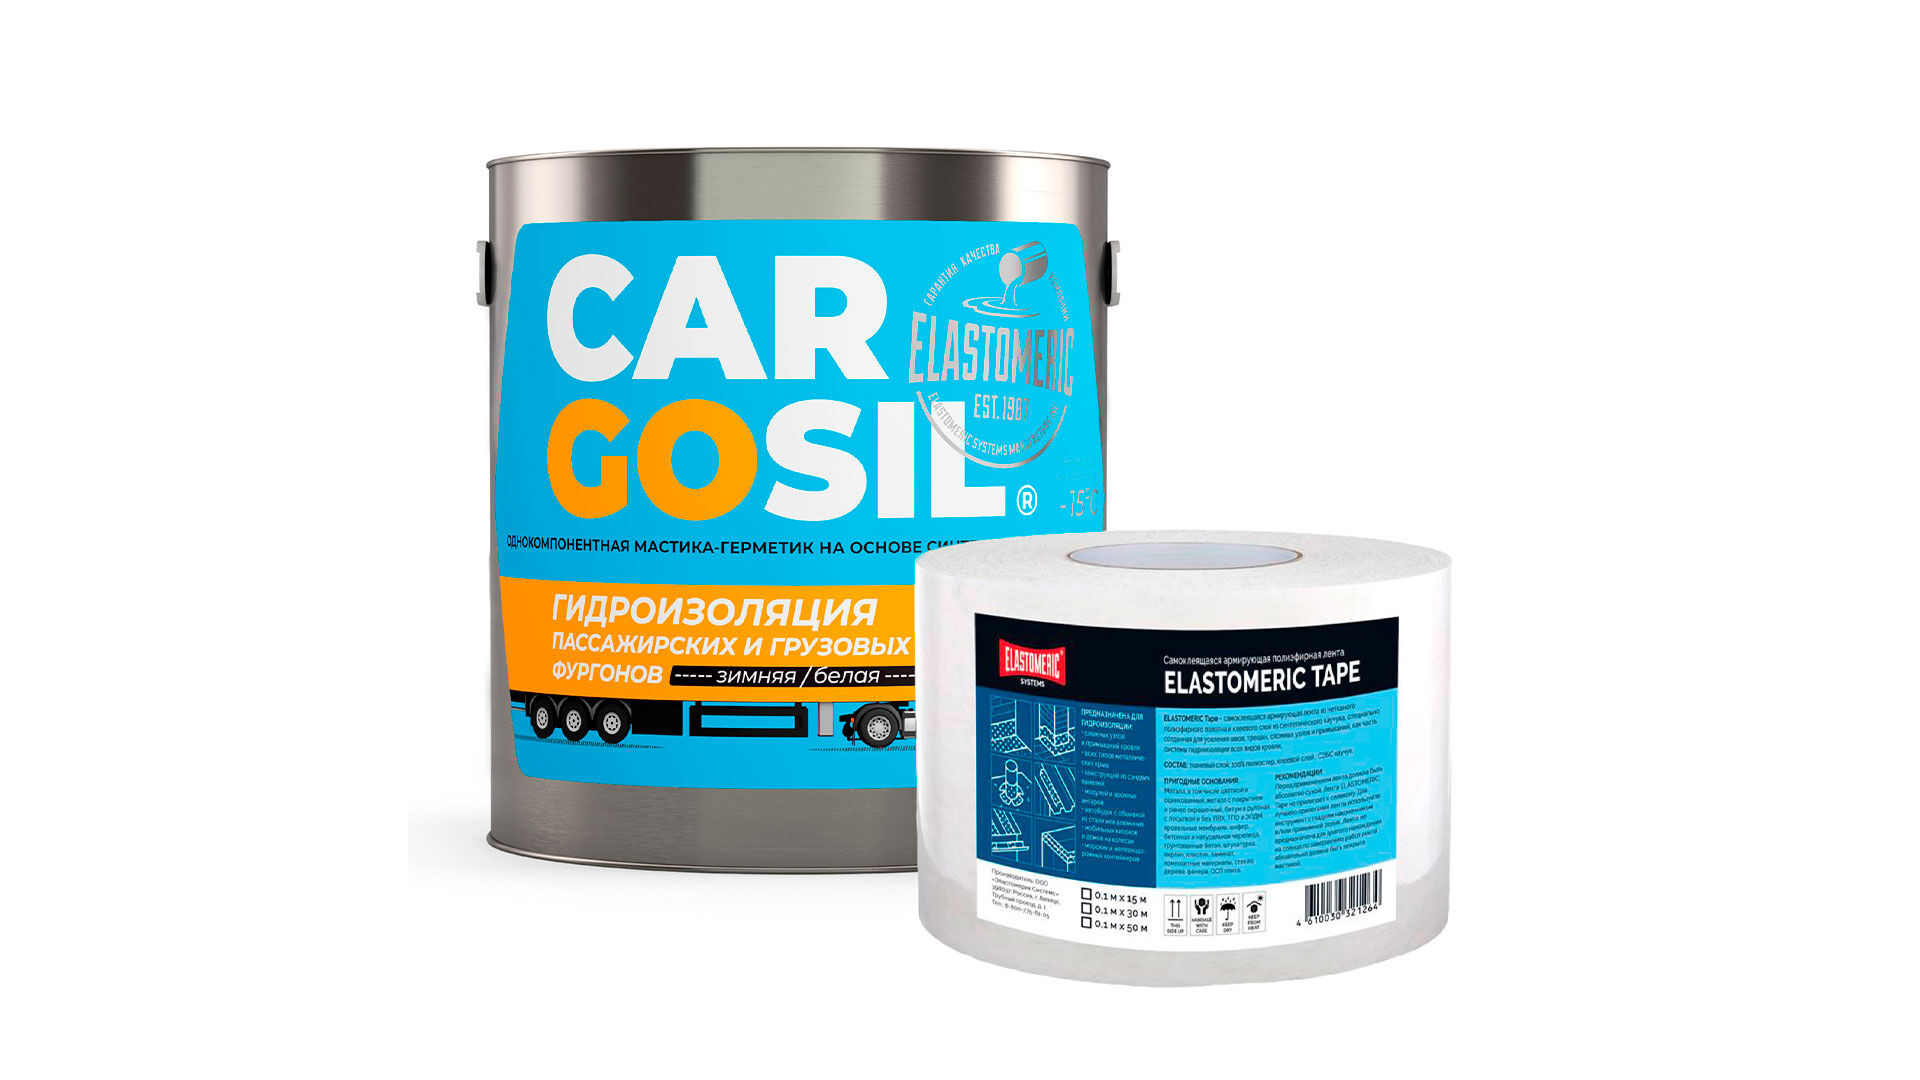 Ремкомплект Cargosil зимний - жидкая резина для устранения протечек на крышах фургонов и будок (Серый)